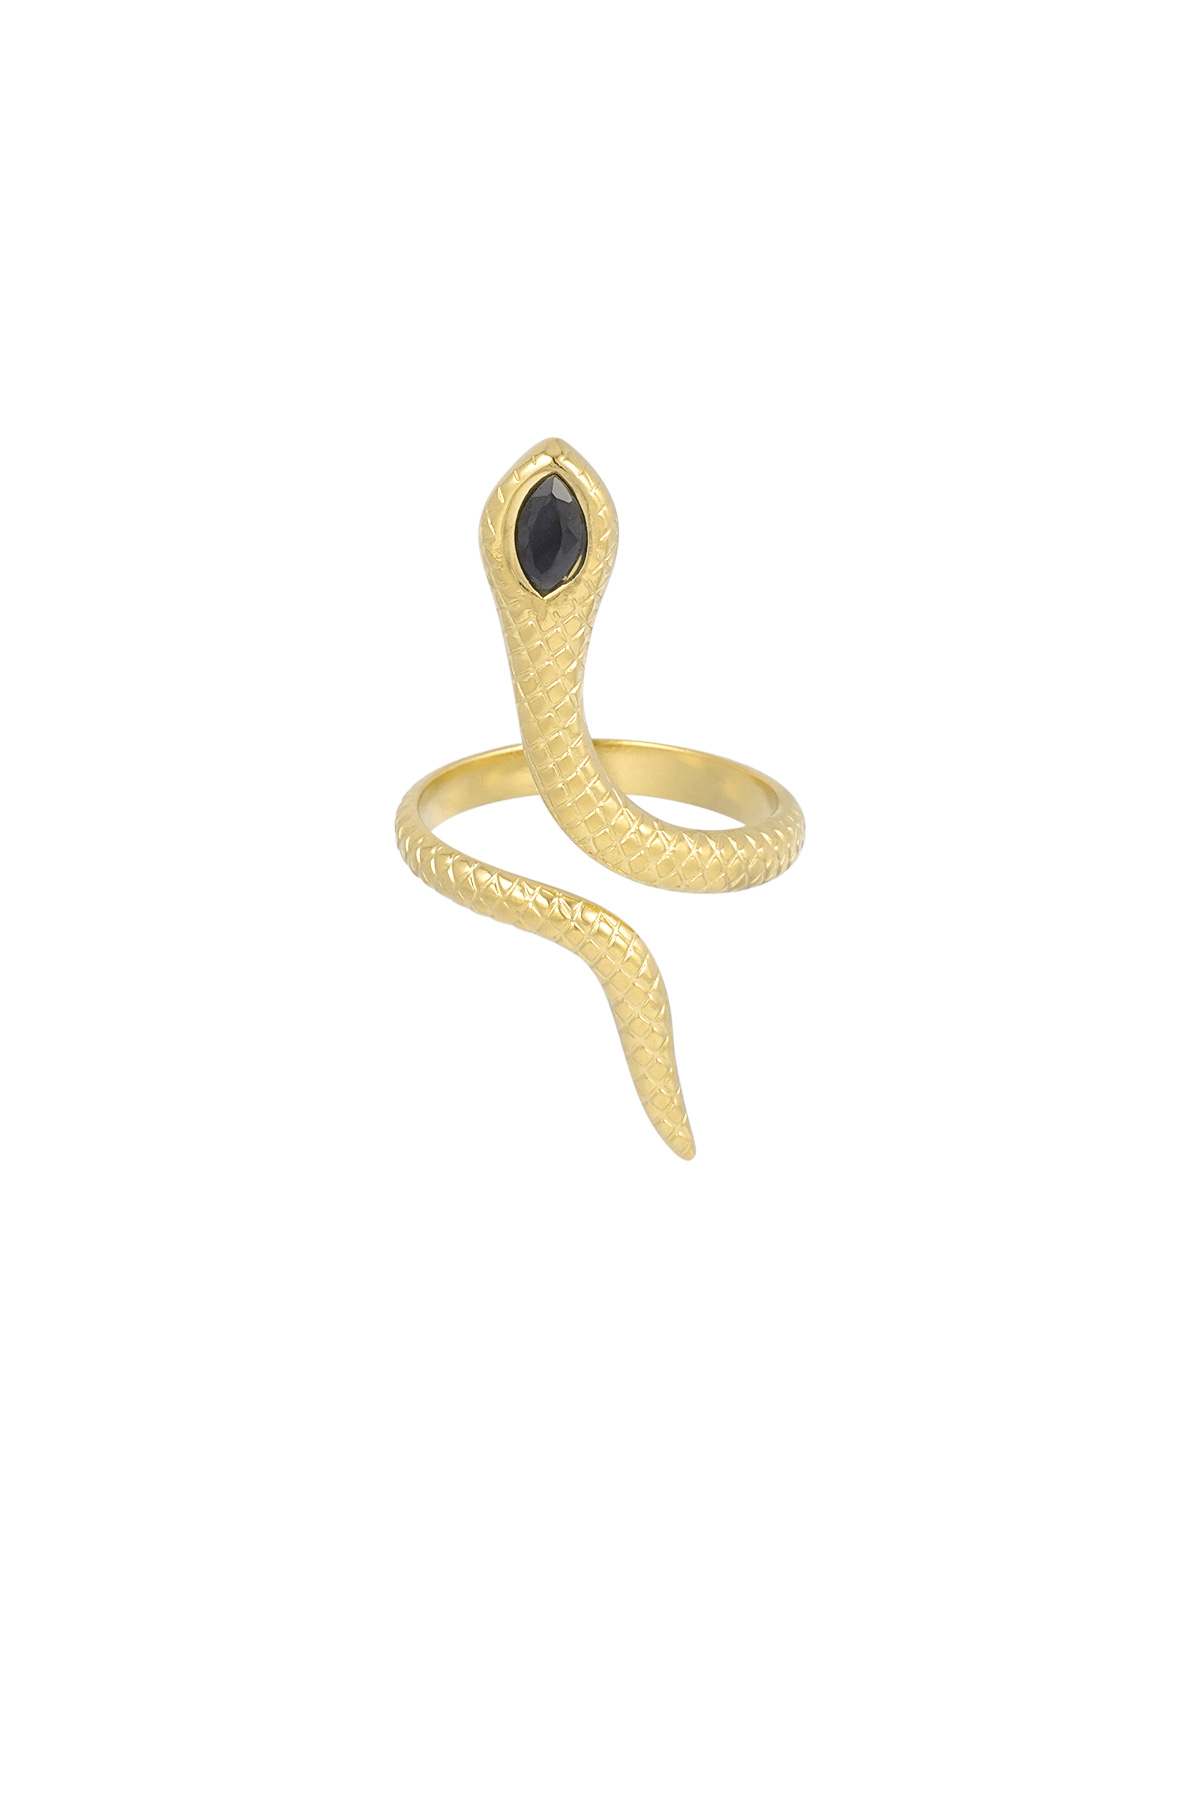 Black snake ring - gold 